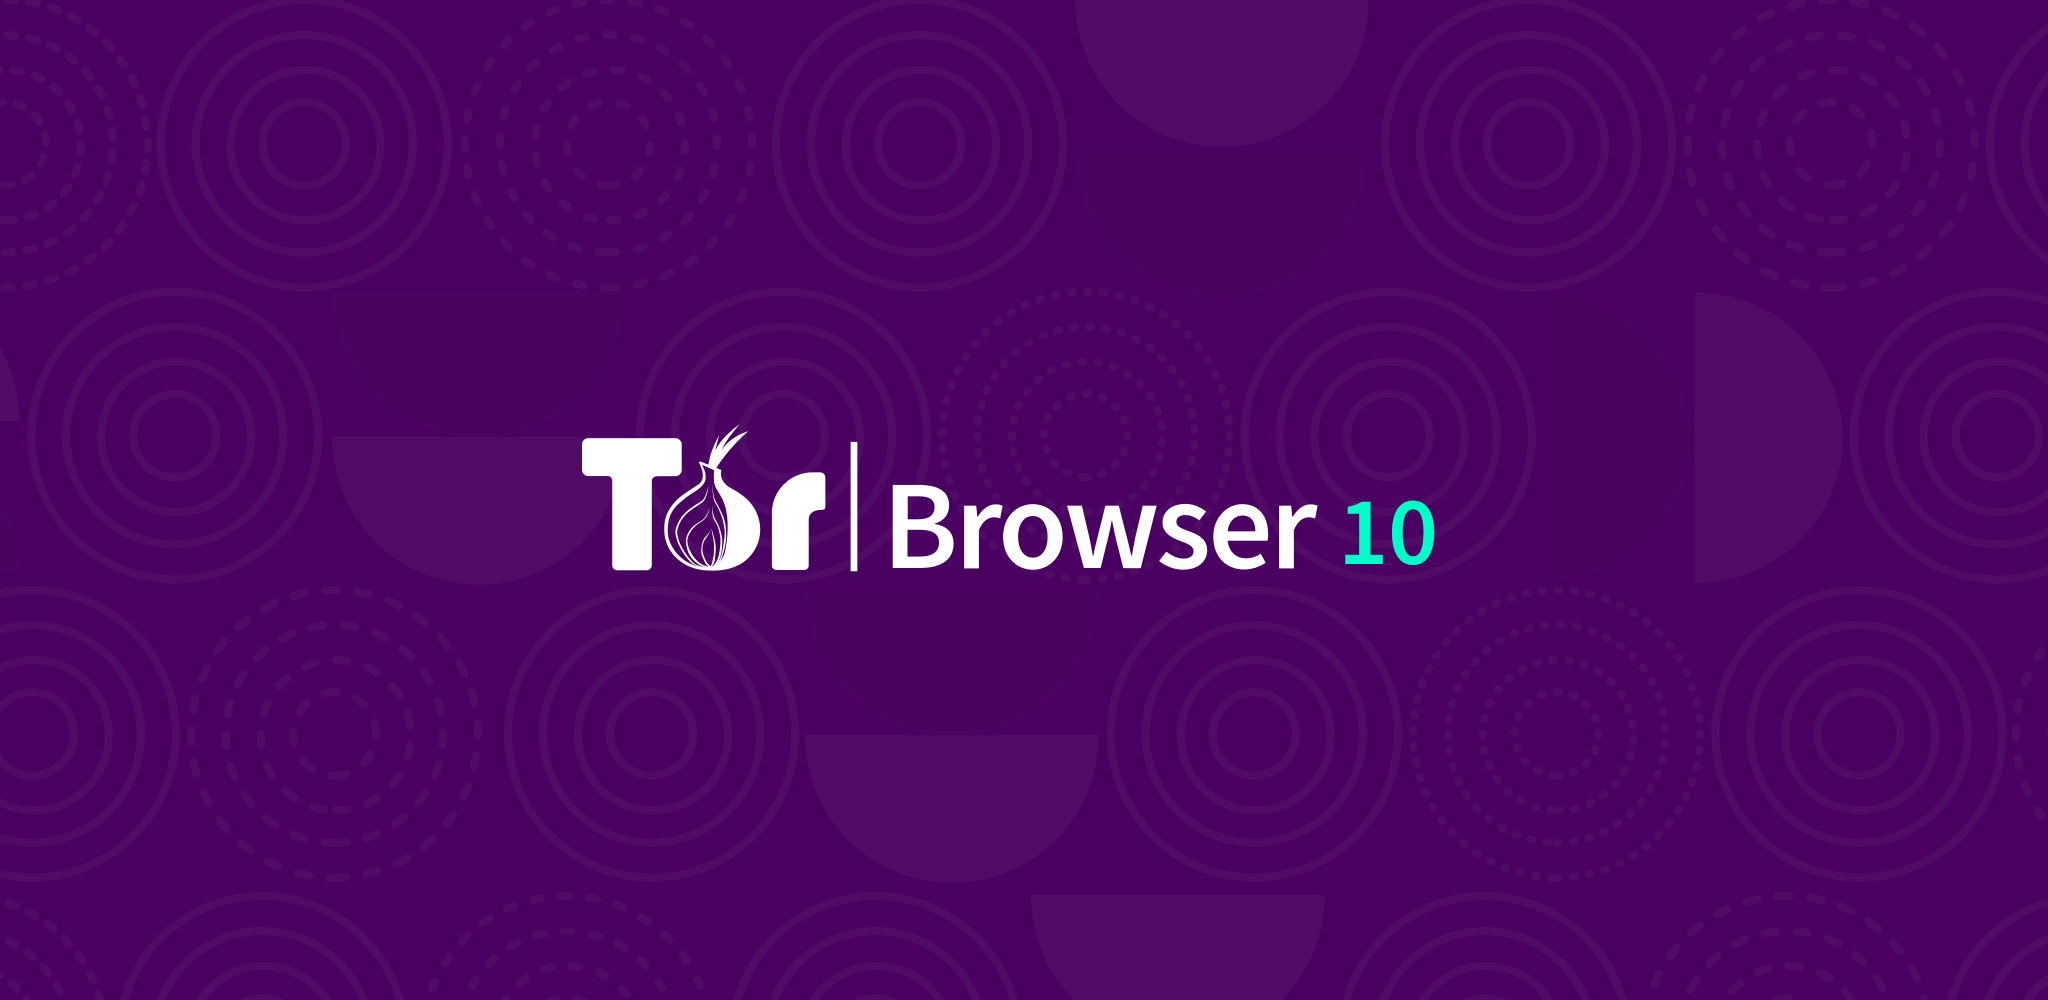 tor browser новая личность mega